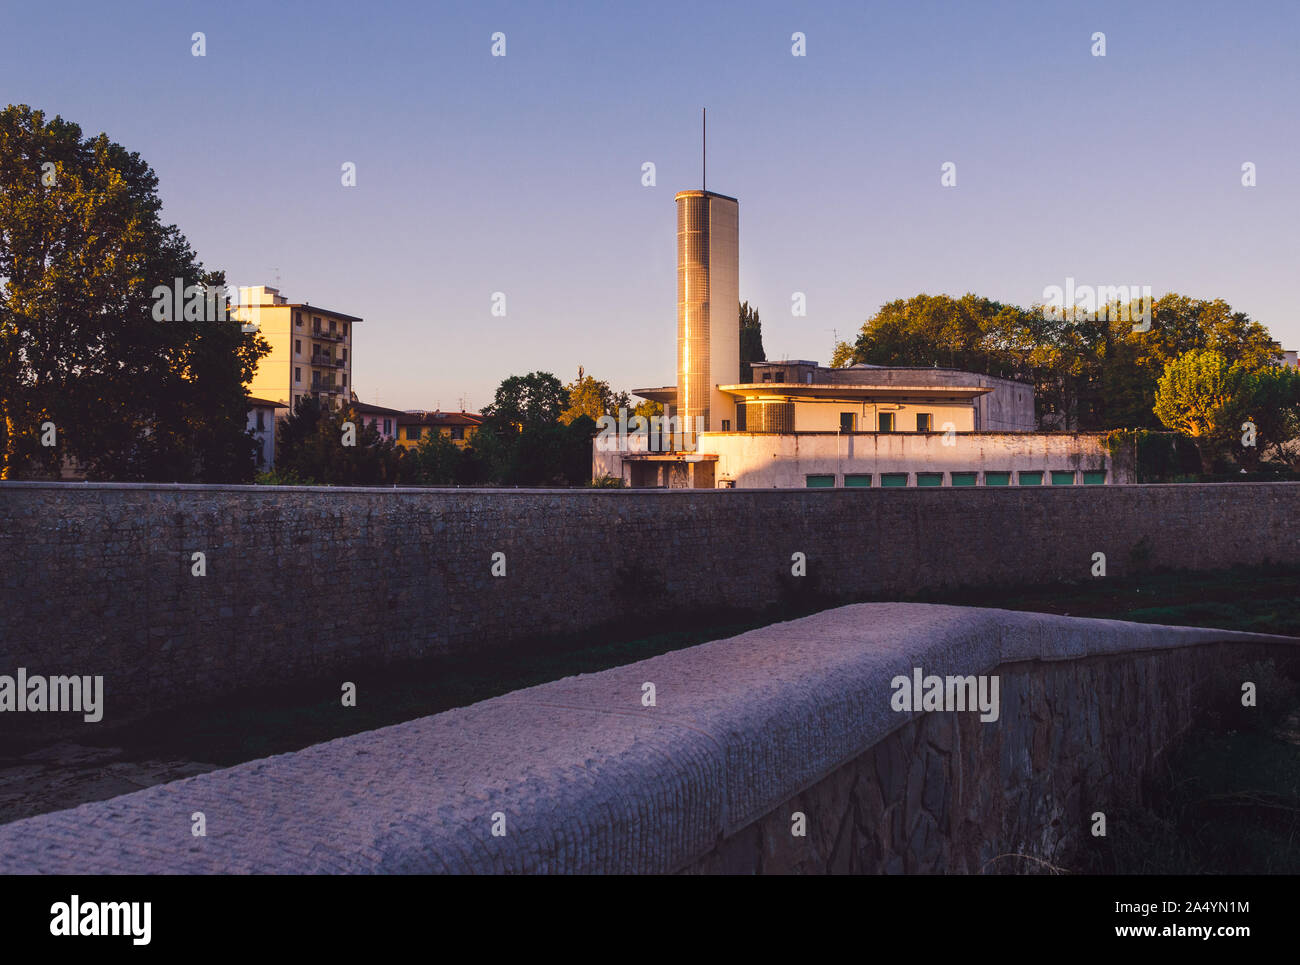 Florenz Toskana Italien, Cinema Teatro Puccini rationalist Gebäude mit Glas Brick Tower Pier Luigi Nervi Architekt Stadtbild zugeschrieben Stockfoto